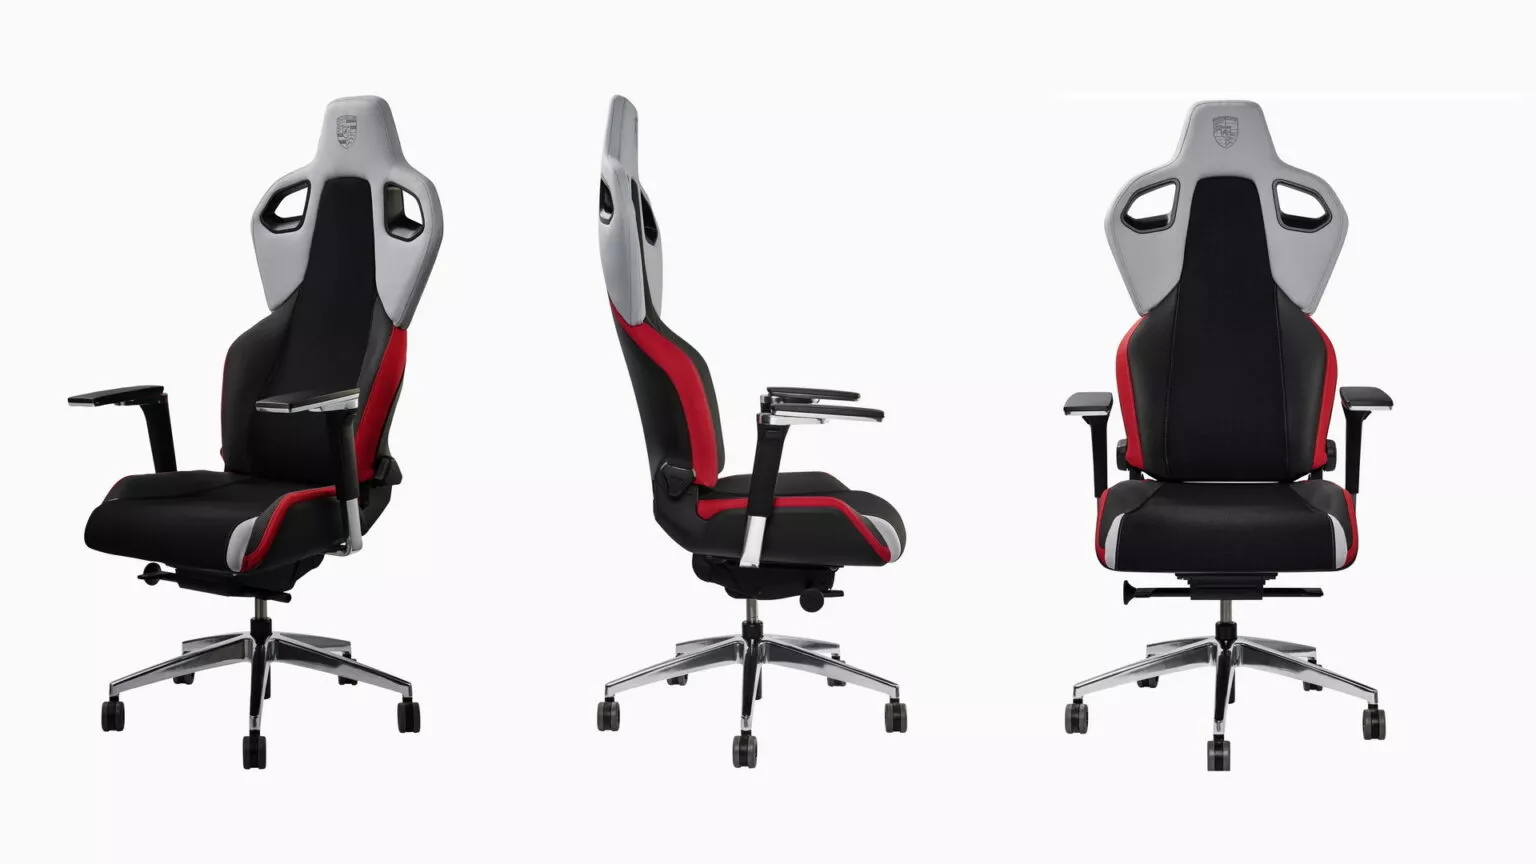 Porsche and Recaro partner to make a special edition desk chair